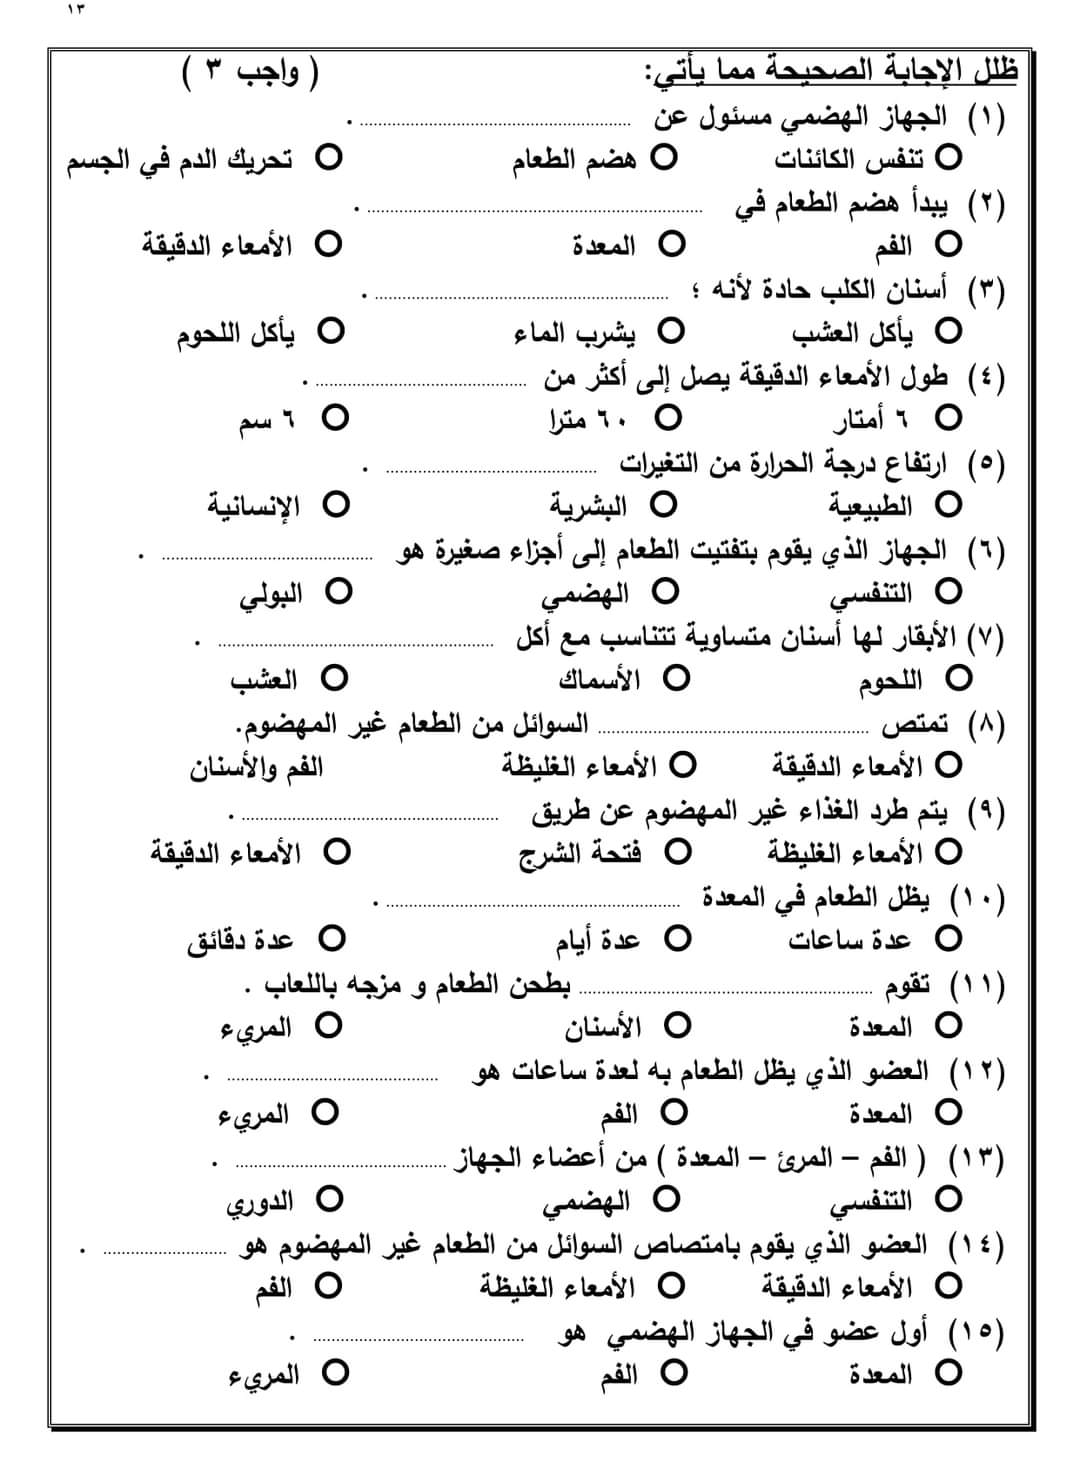 ملزمة مراجعة علوم الصف الرابع الابتدائي - ٢٠٢٢